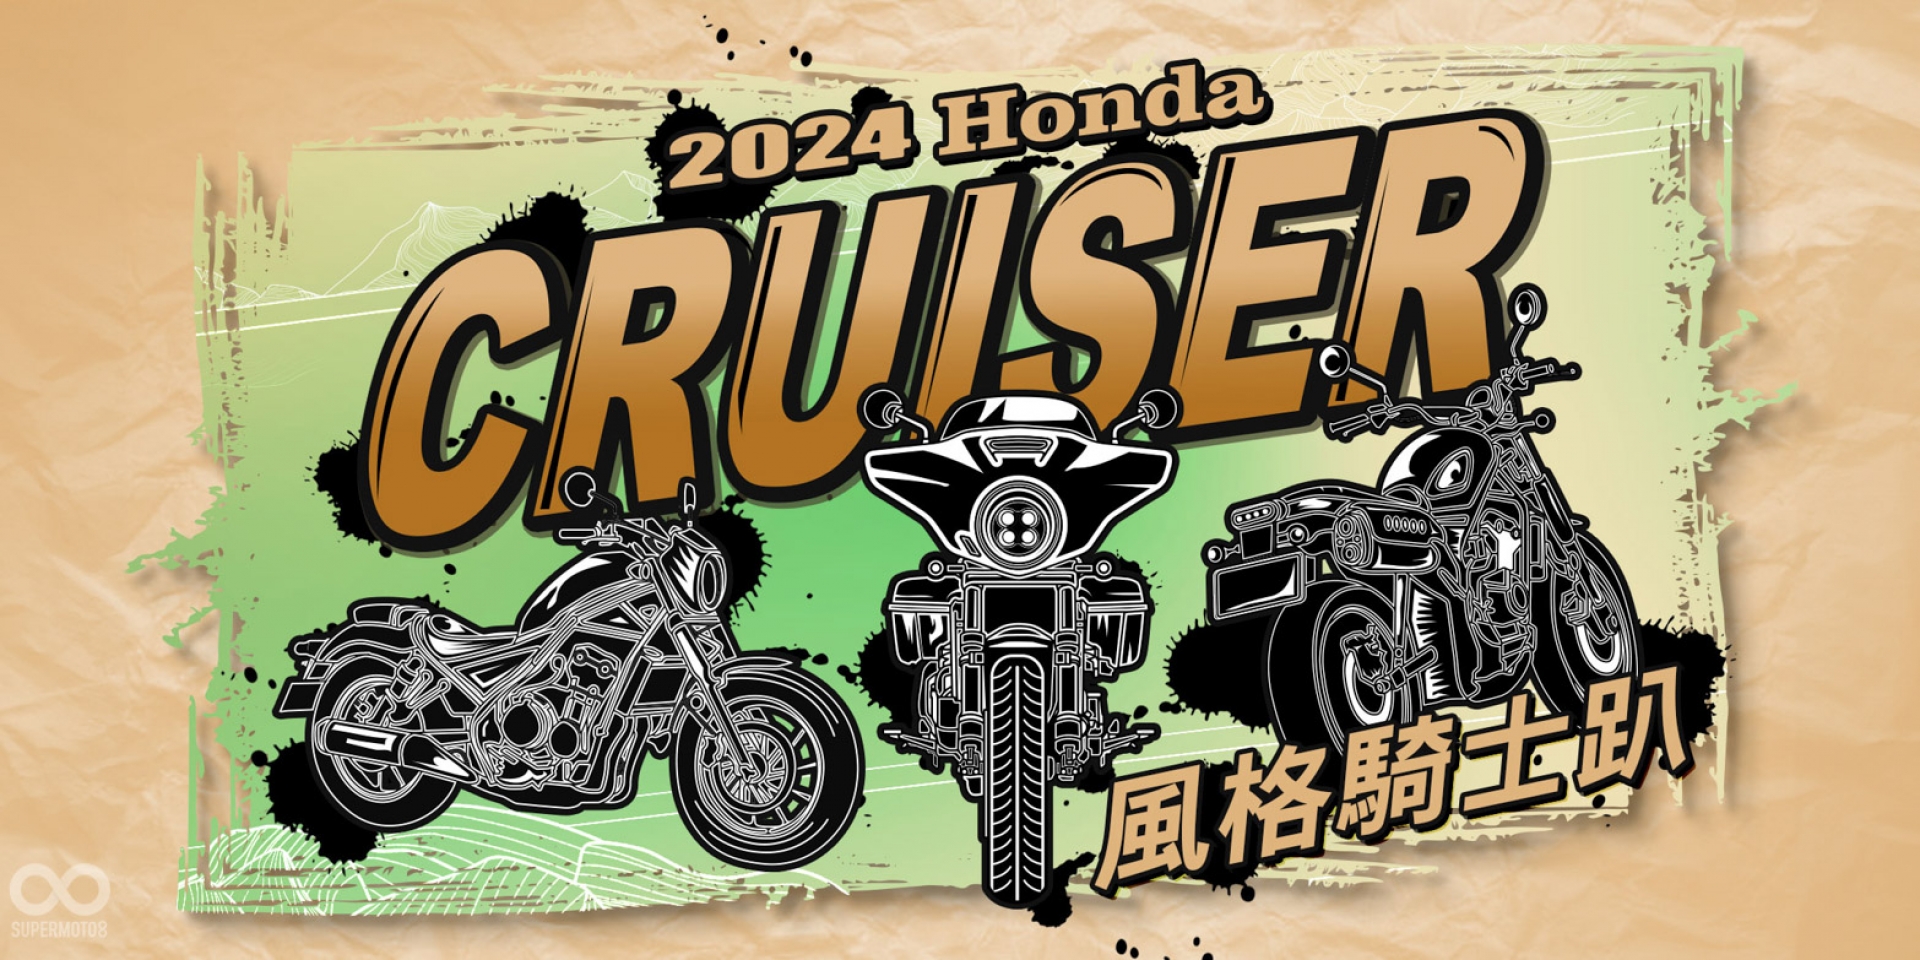 2024 Honda Motorcycle Cruiser 風格騎士趴 Rebel 系與CL STREET 車主專屬活動 即刻開跑  同場加映《風格騎士照片大賞》